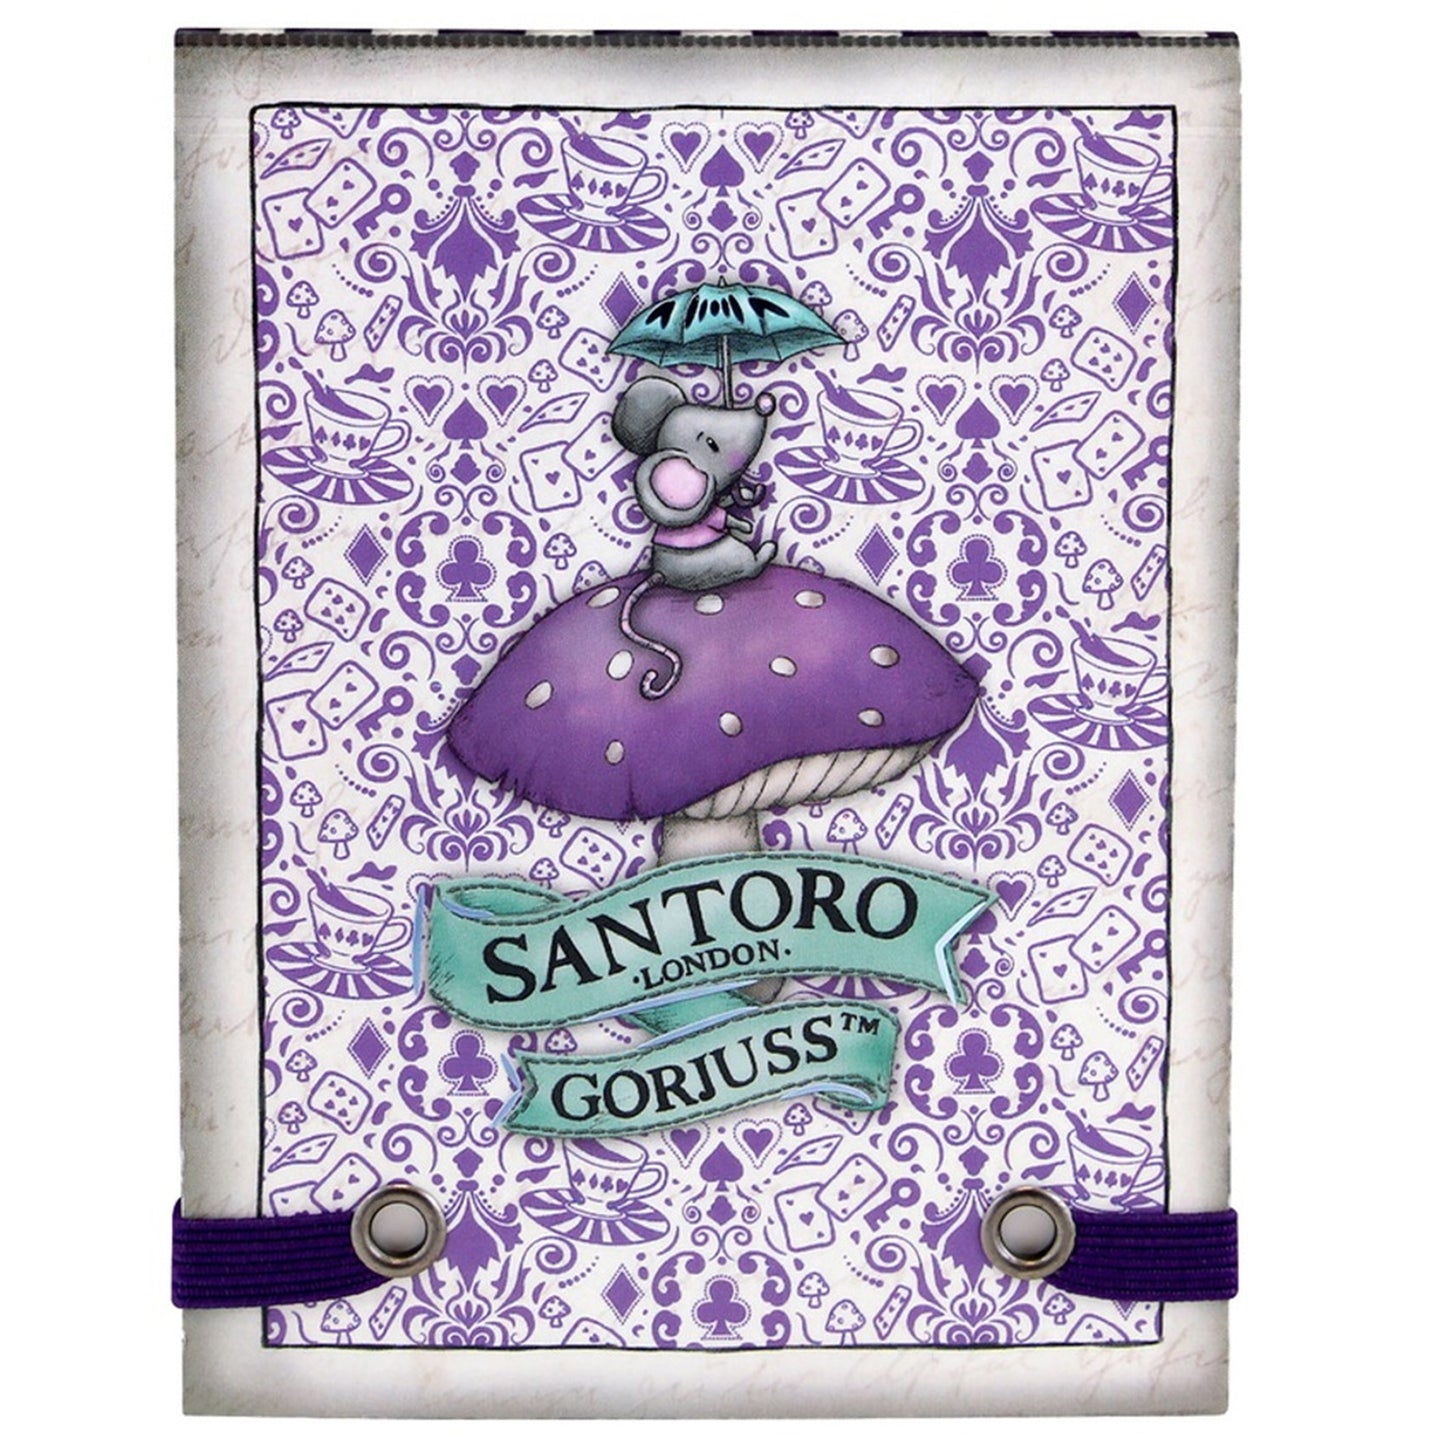 Santoro Gorjuss - Pocket Notebook - A Little More Tea